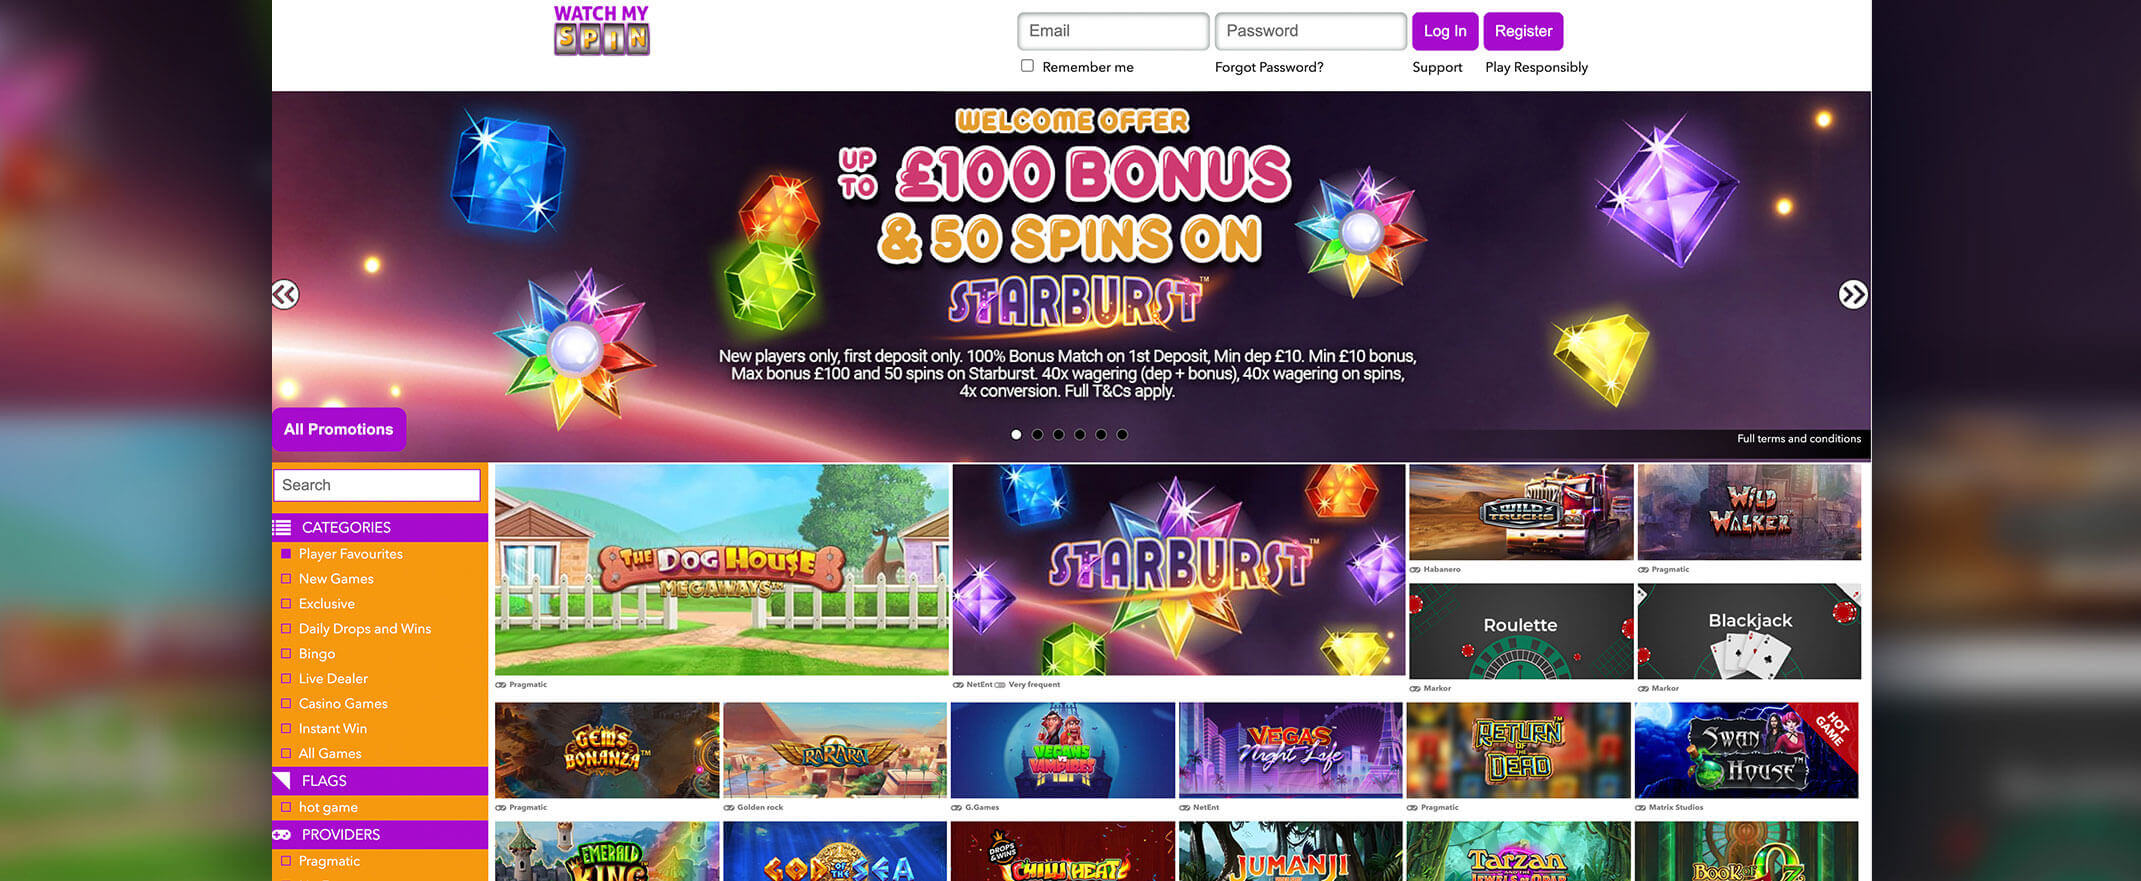 Watch My Spin casino review screenshot